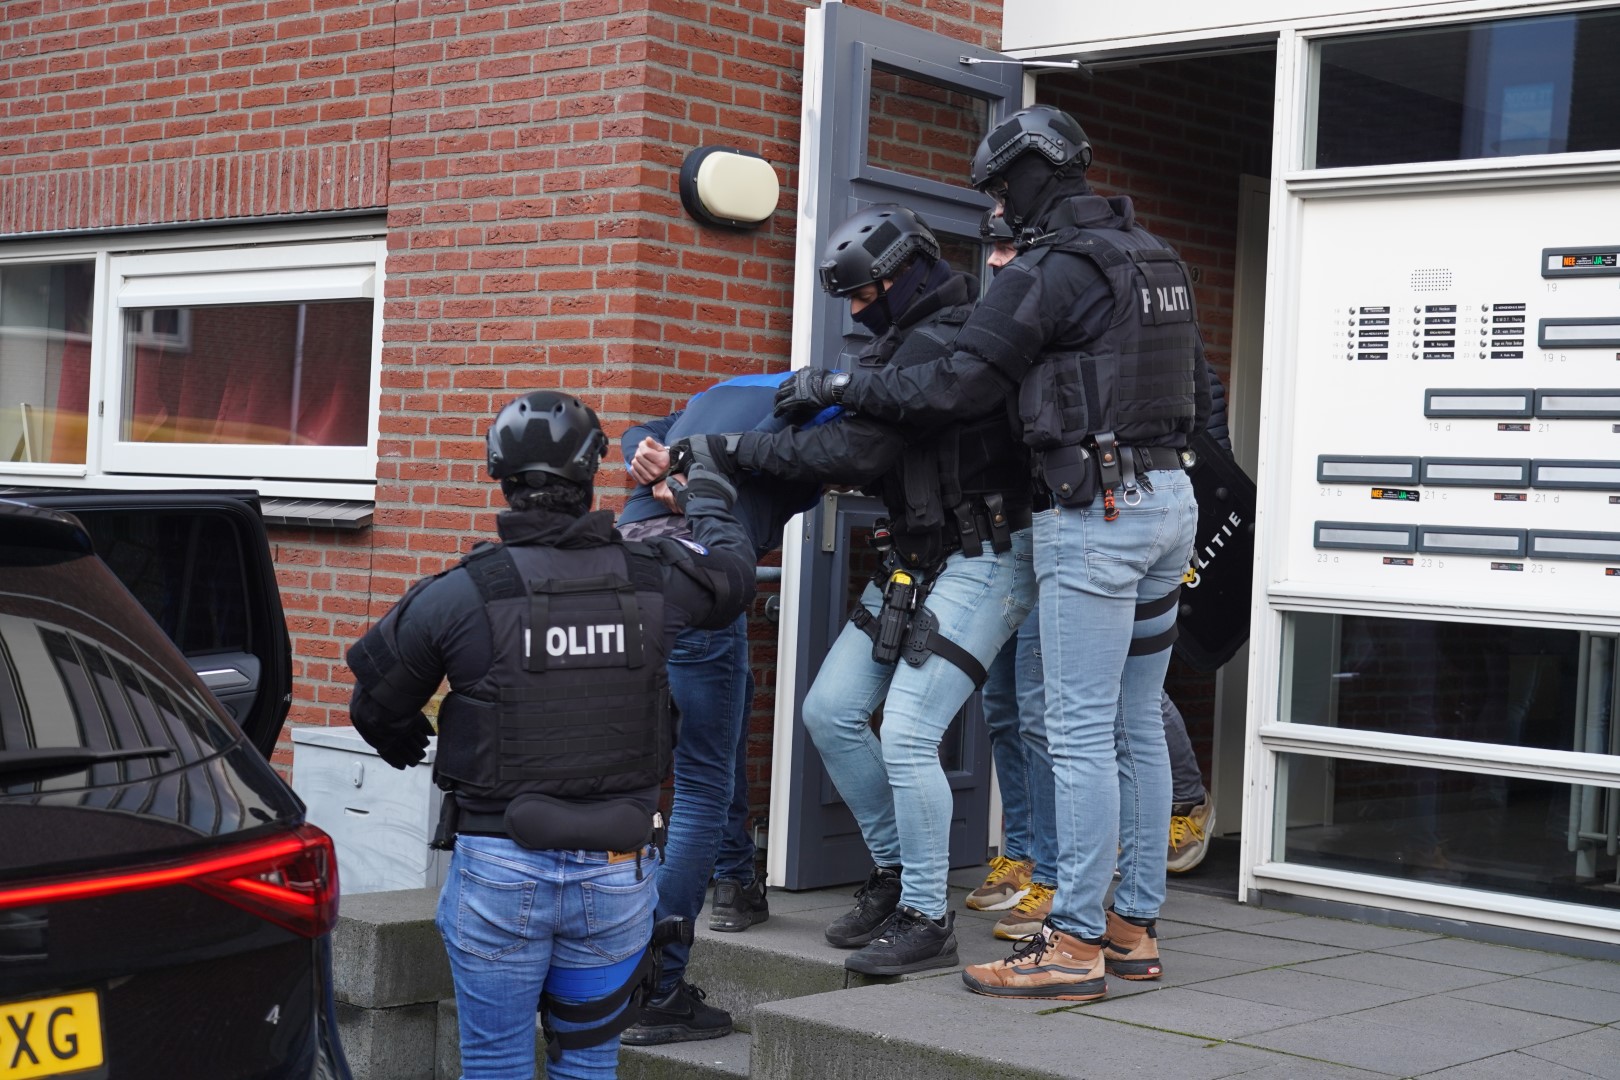 Politie aanhoudingseenheid doet inval in appartement Nijmegen